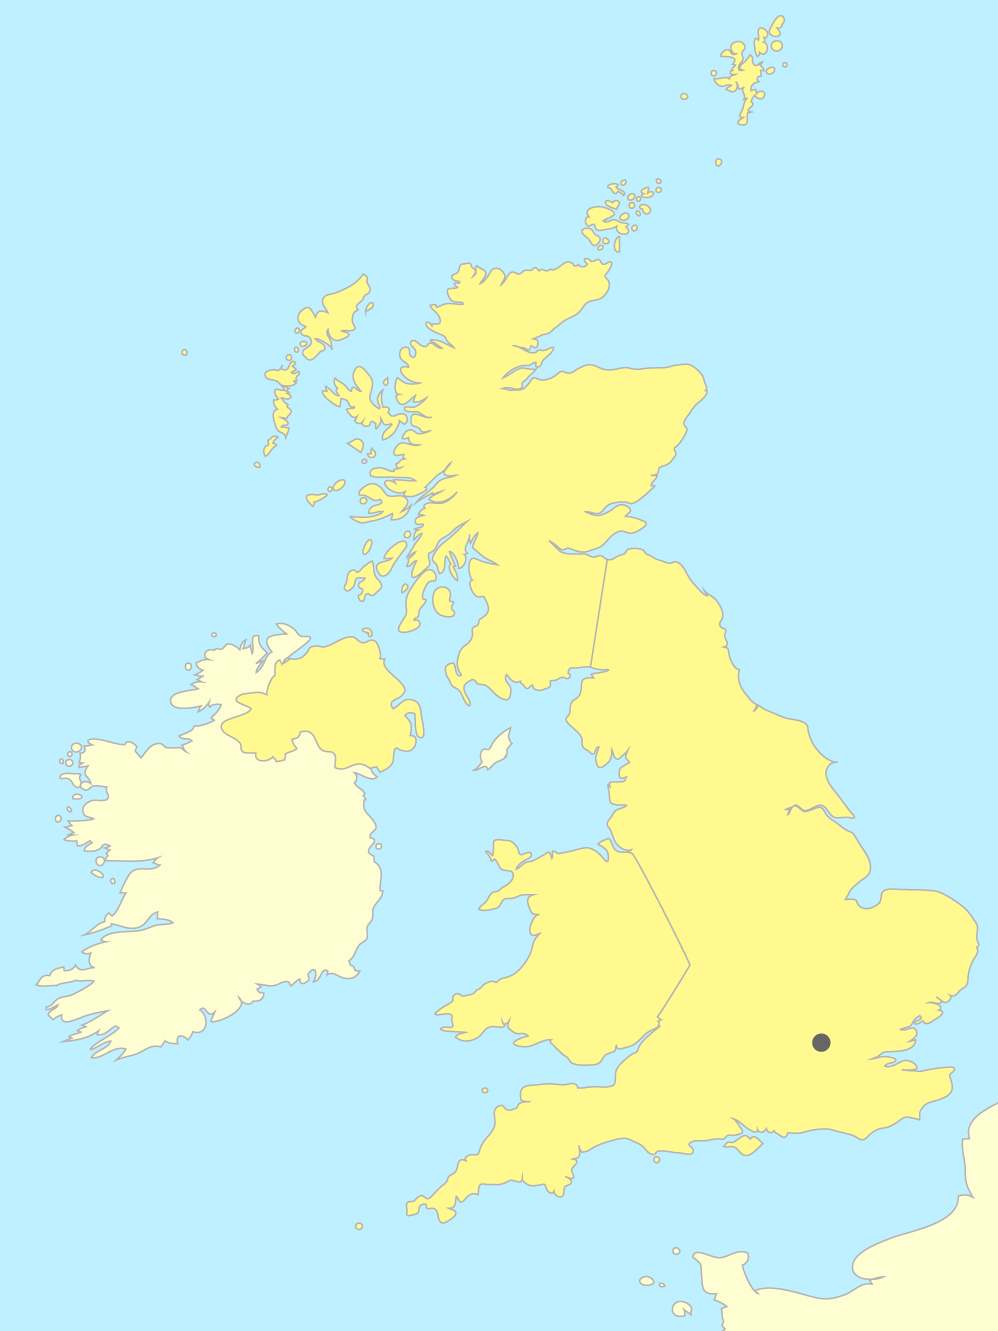 Placer Les Pays Et Les Villes Du Royaume-Uni Sur Une Carte concernant Placer Des Villes Sur Une Carte